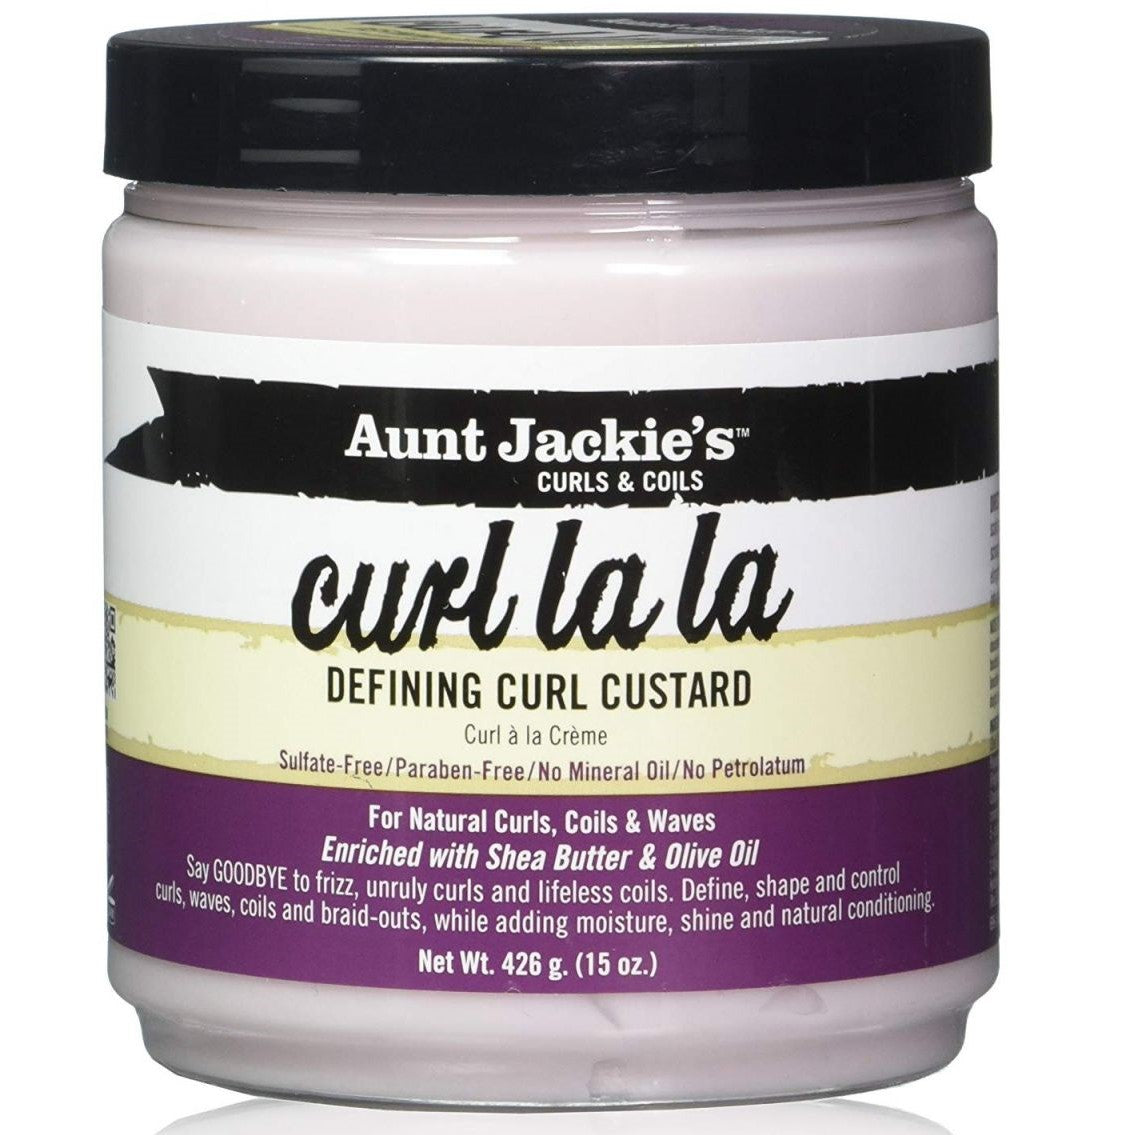 Tant Jackies Curls & Coils Curl La Definerar Curl vaniljsås 425GR - Skapa magiska lockar!